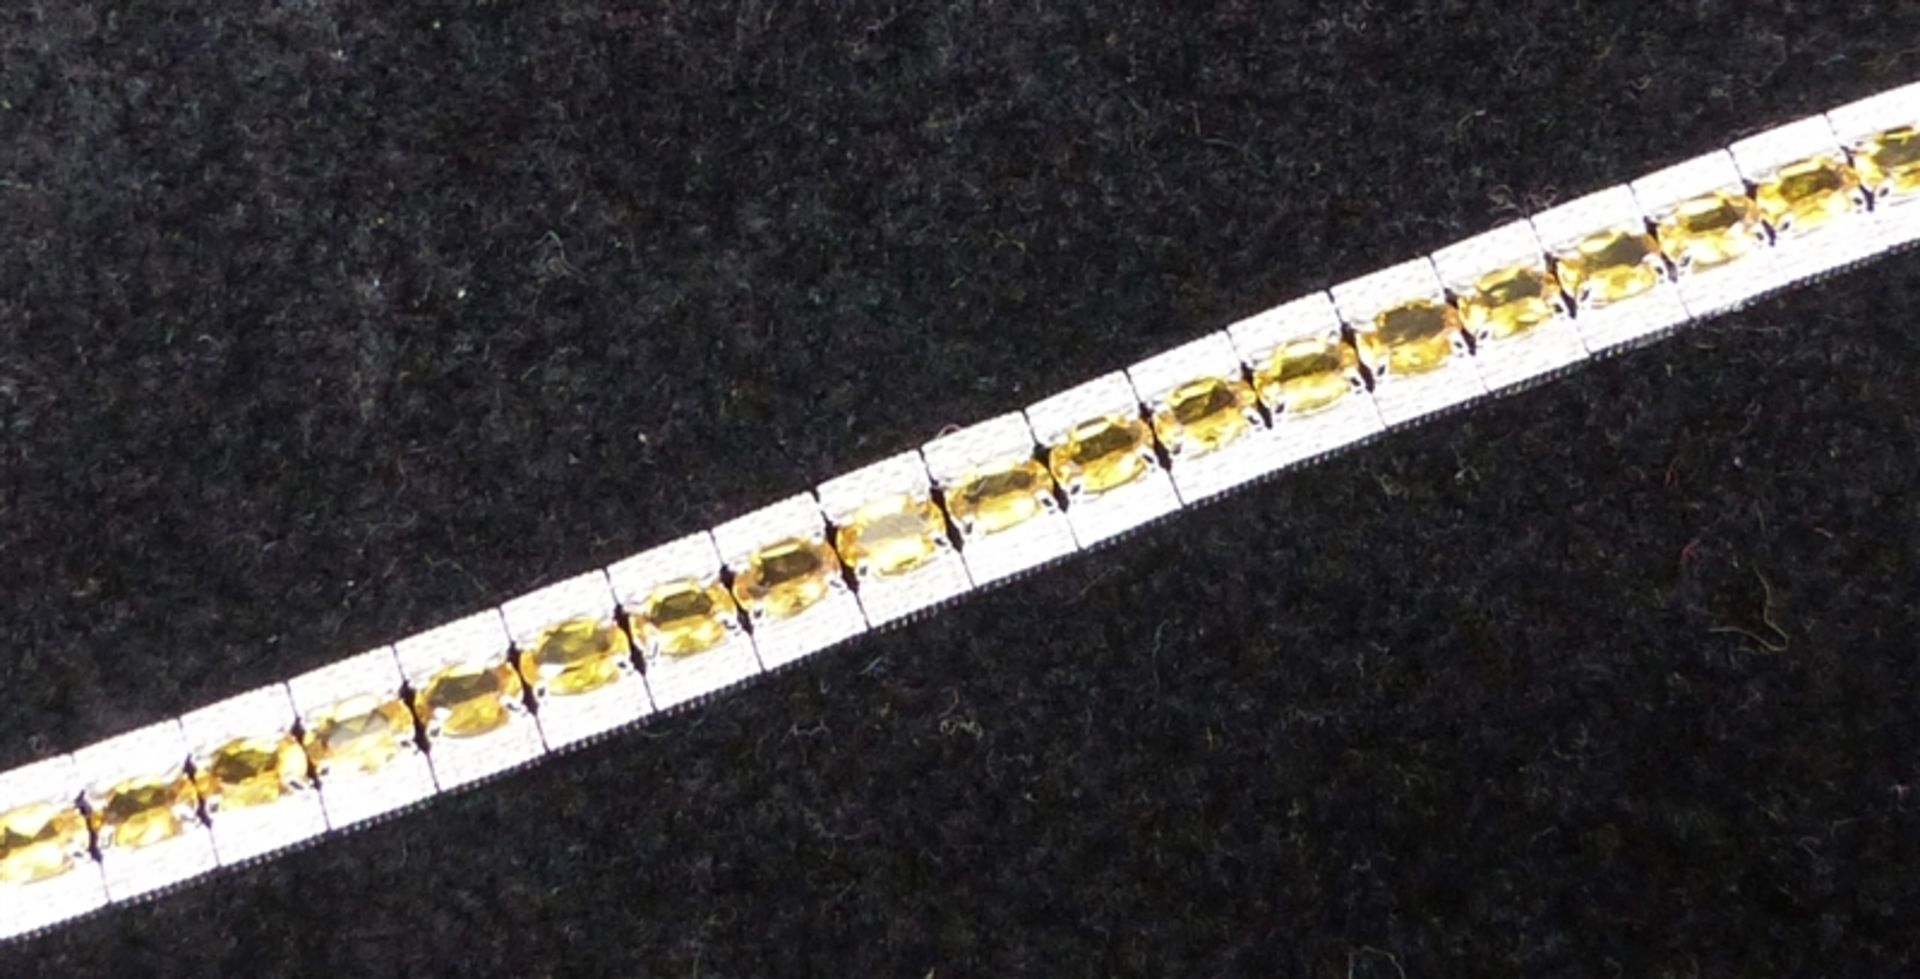 Armband 925 Sterlingsilber, besetzt mit 33 Goldtopasen, Kastenschloss mit Sicherung, ca. 22 g